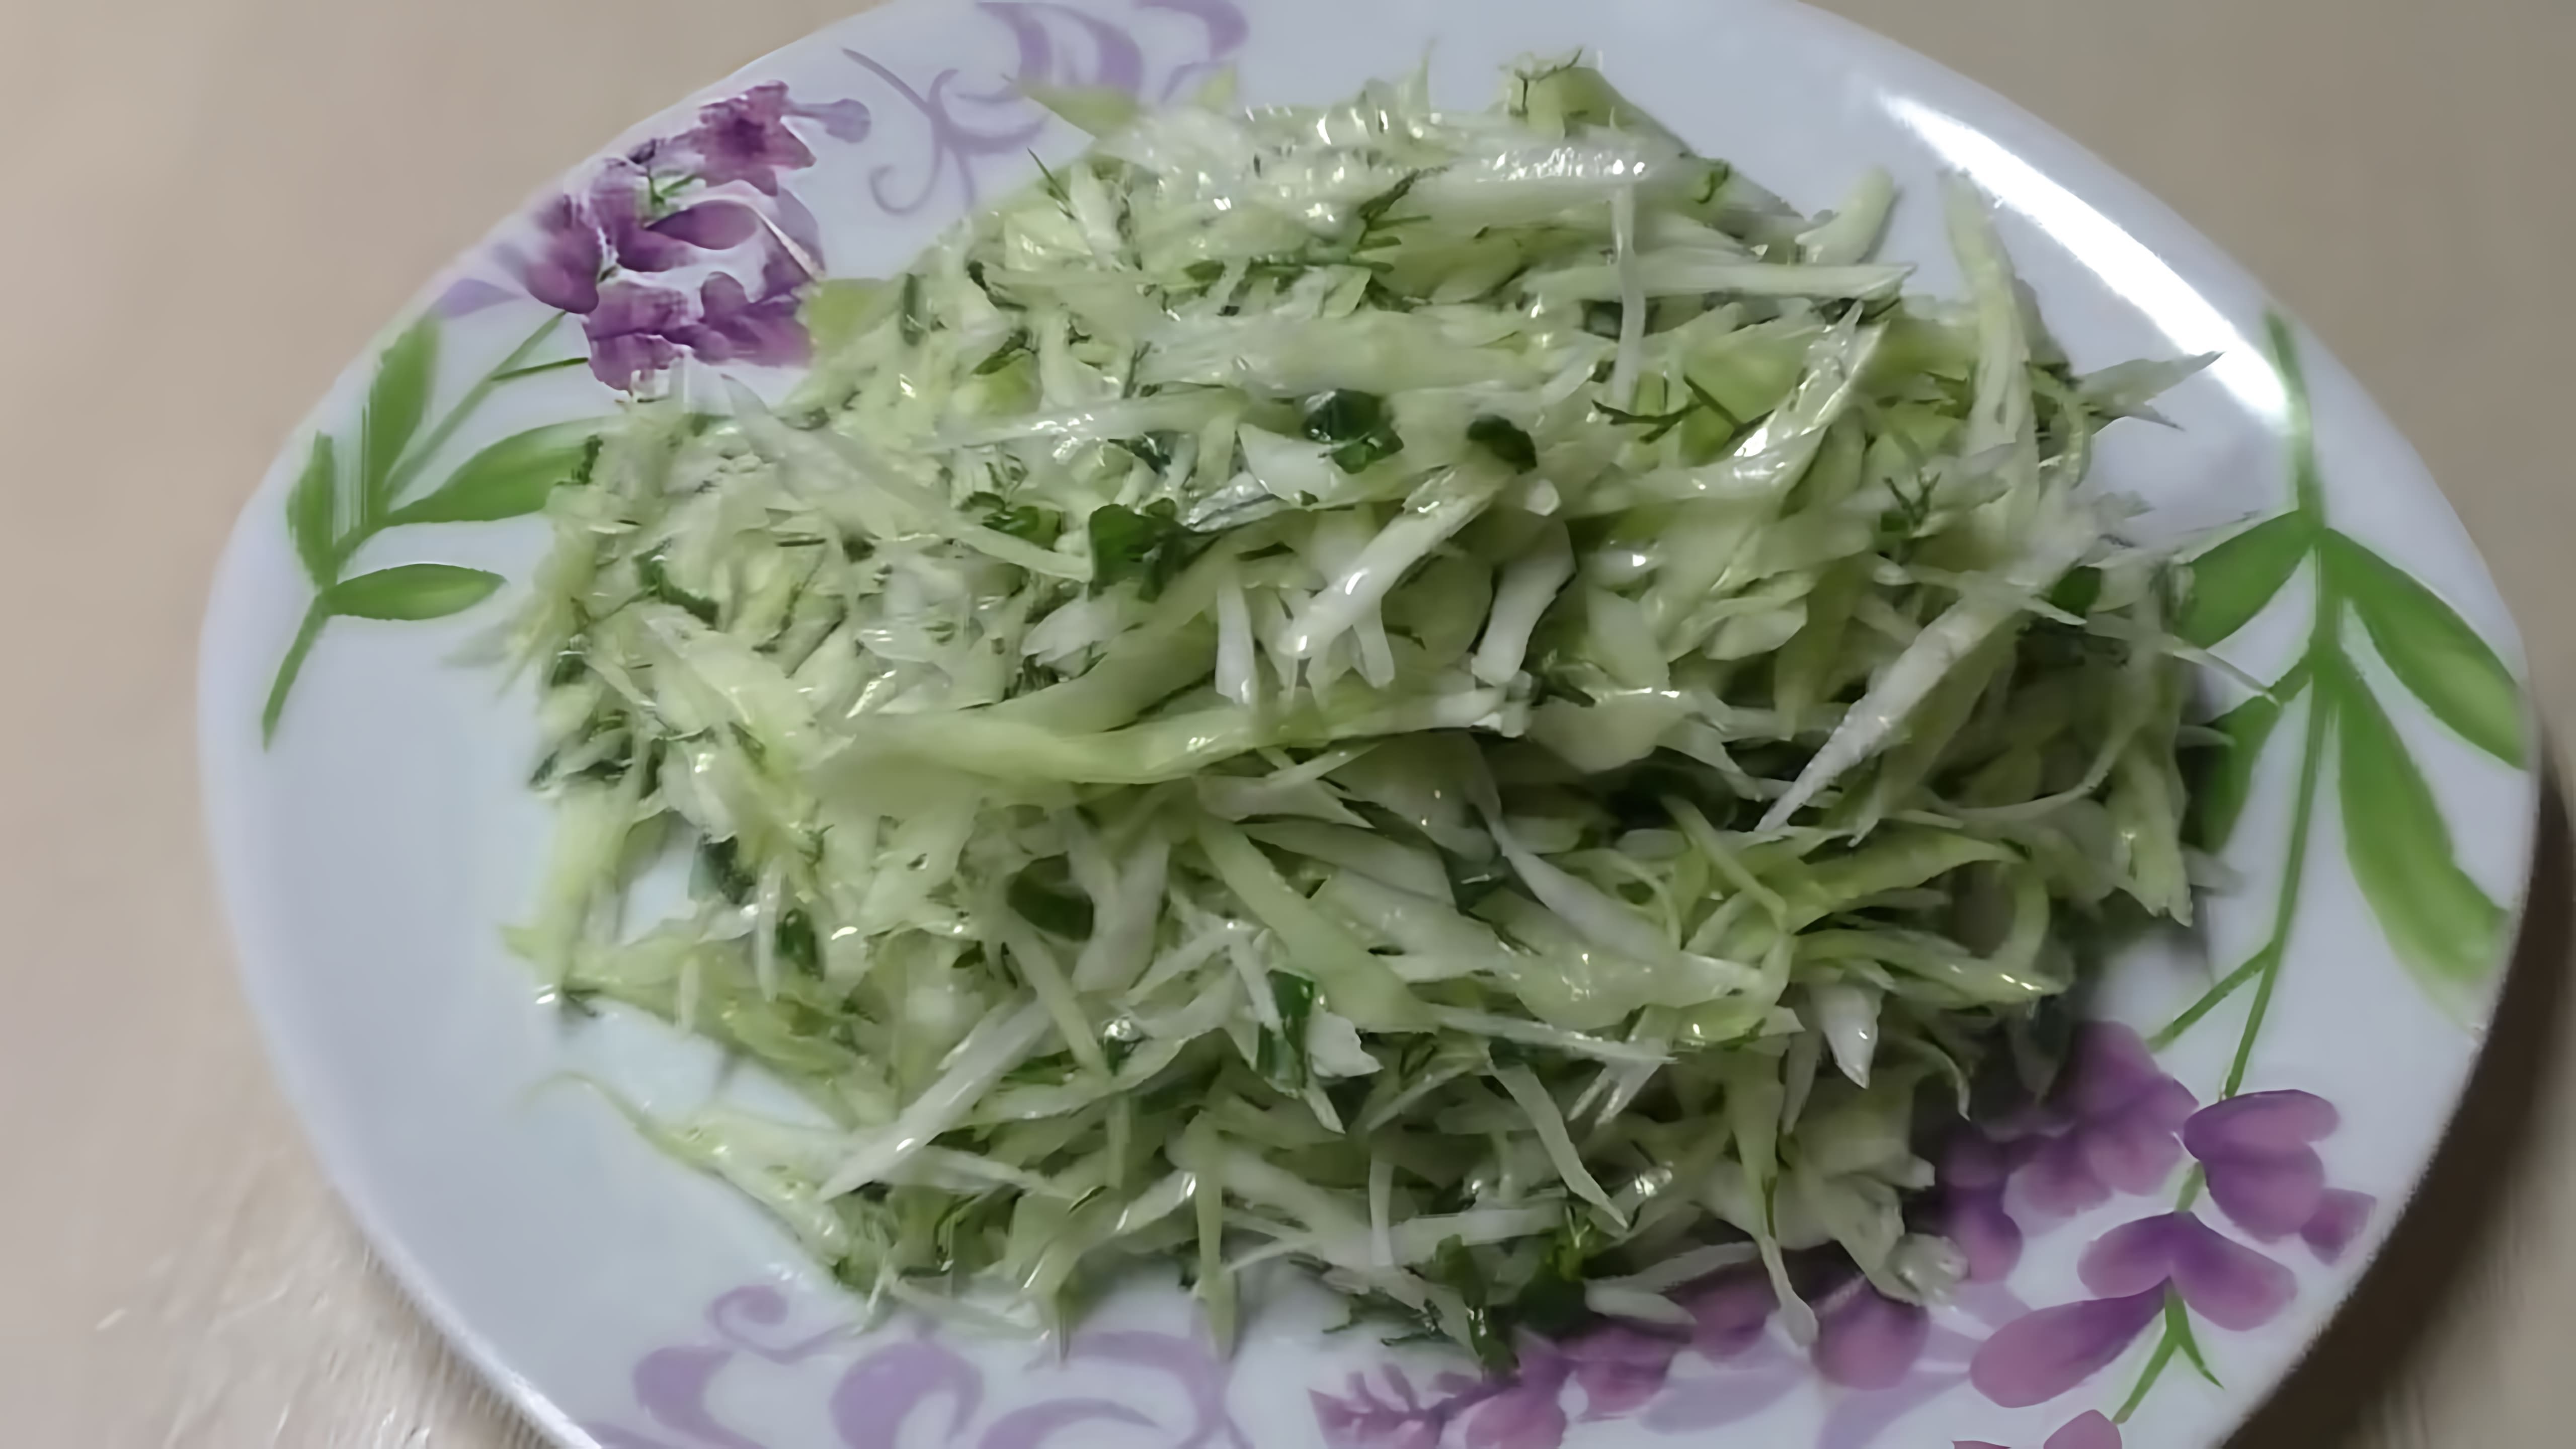 Вкусный Полезный Диетический Салат Из Свежей Капусты С Зеленью - это видео-ролик, который демонстрирует процесс приготовления салата из свежей капусты с зеленью